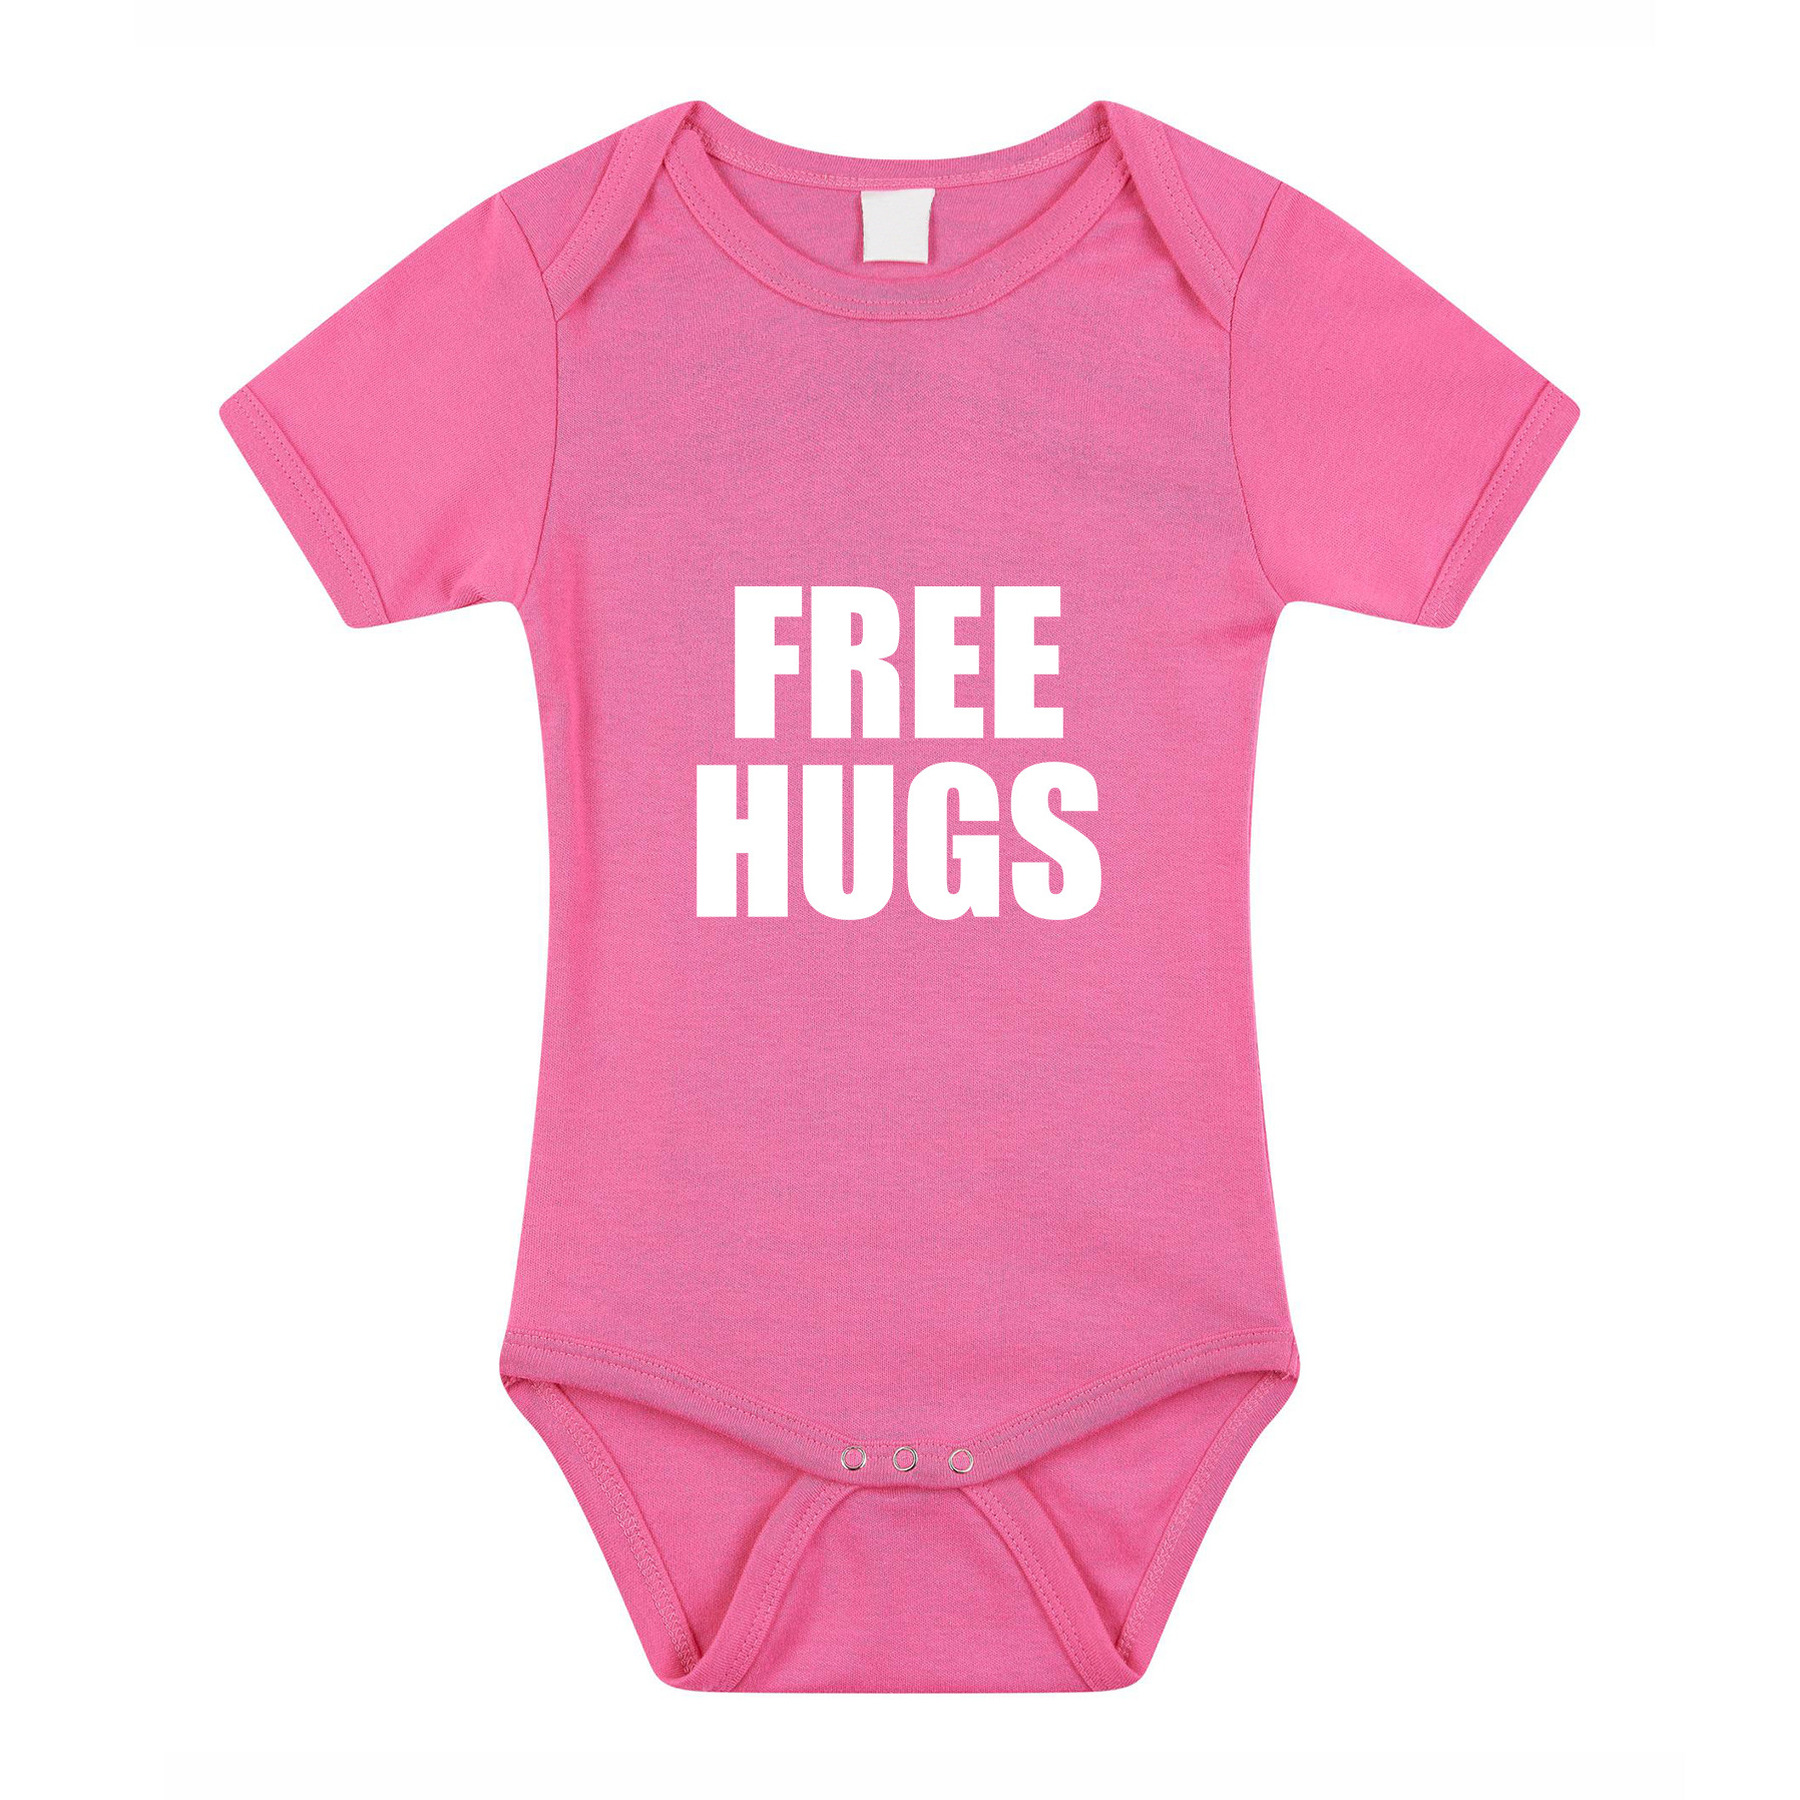 Free hugs cadeau baby rompertje roze meisjes